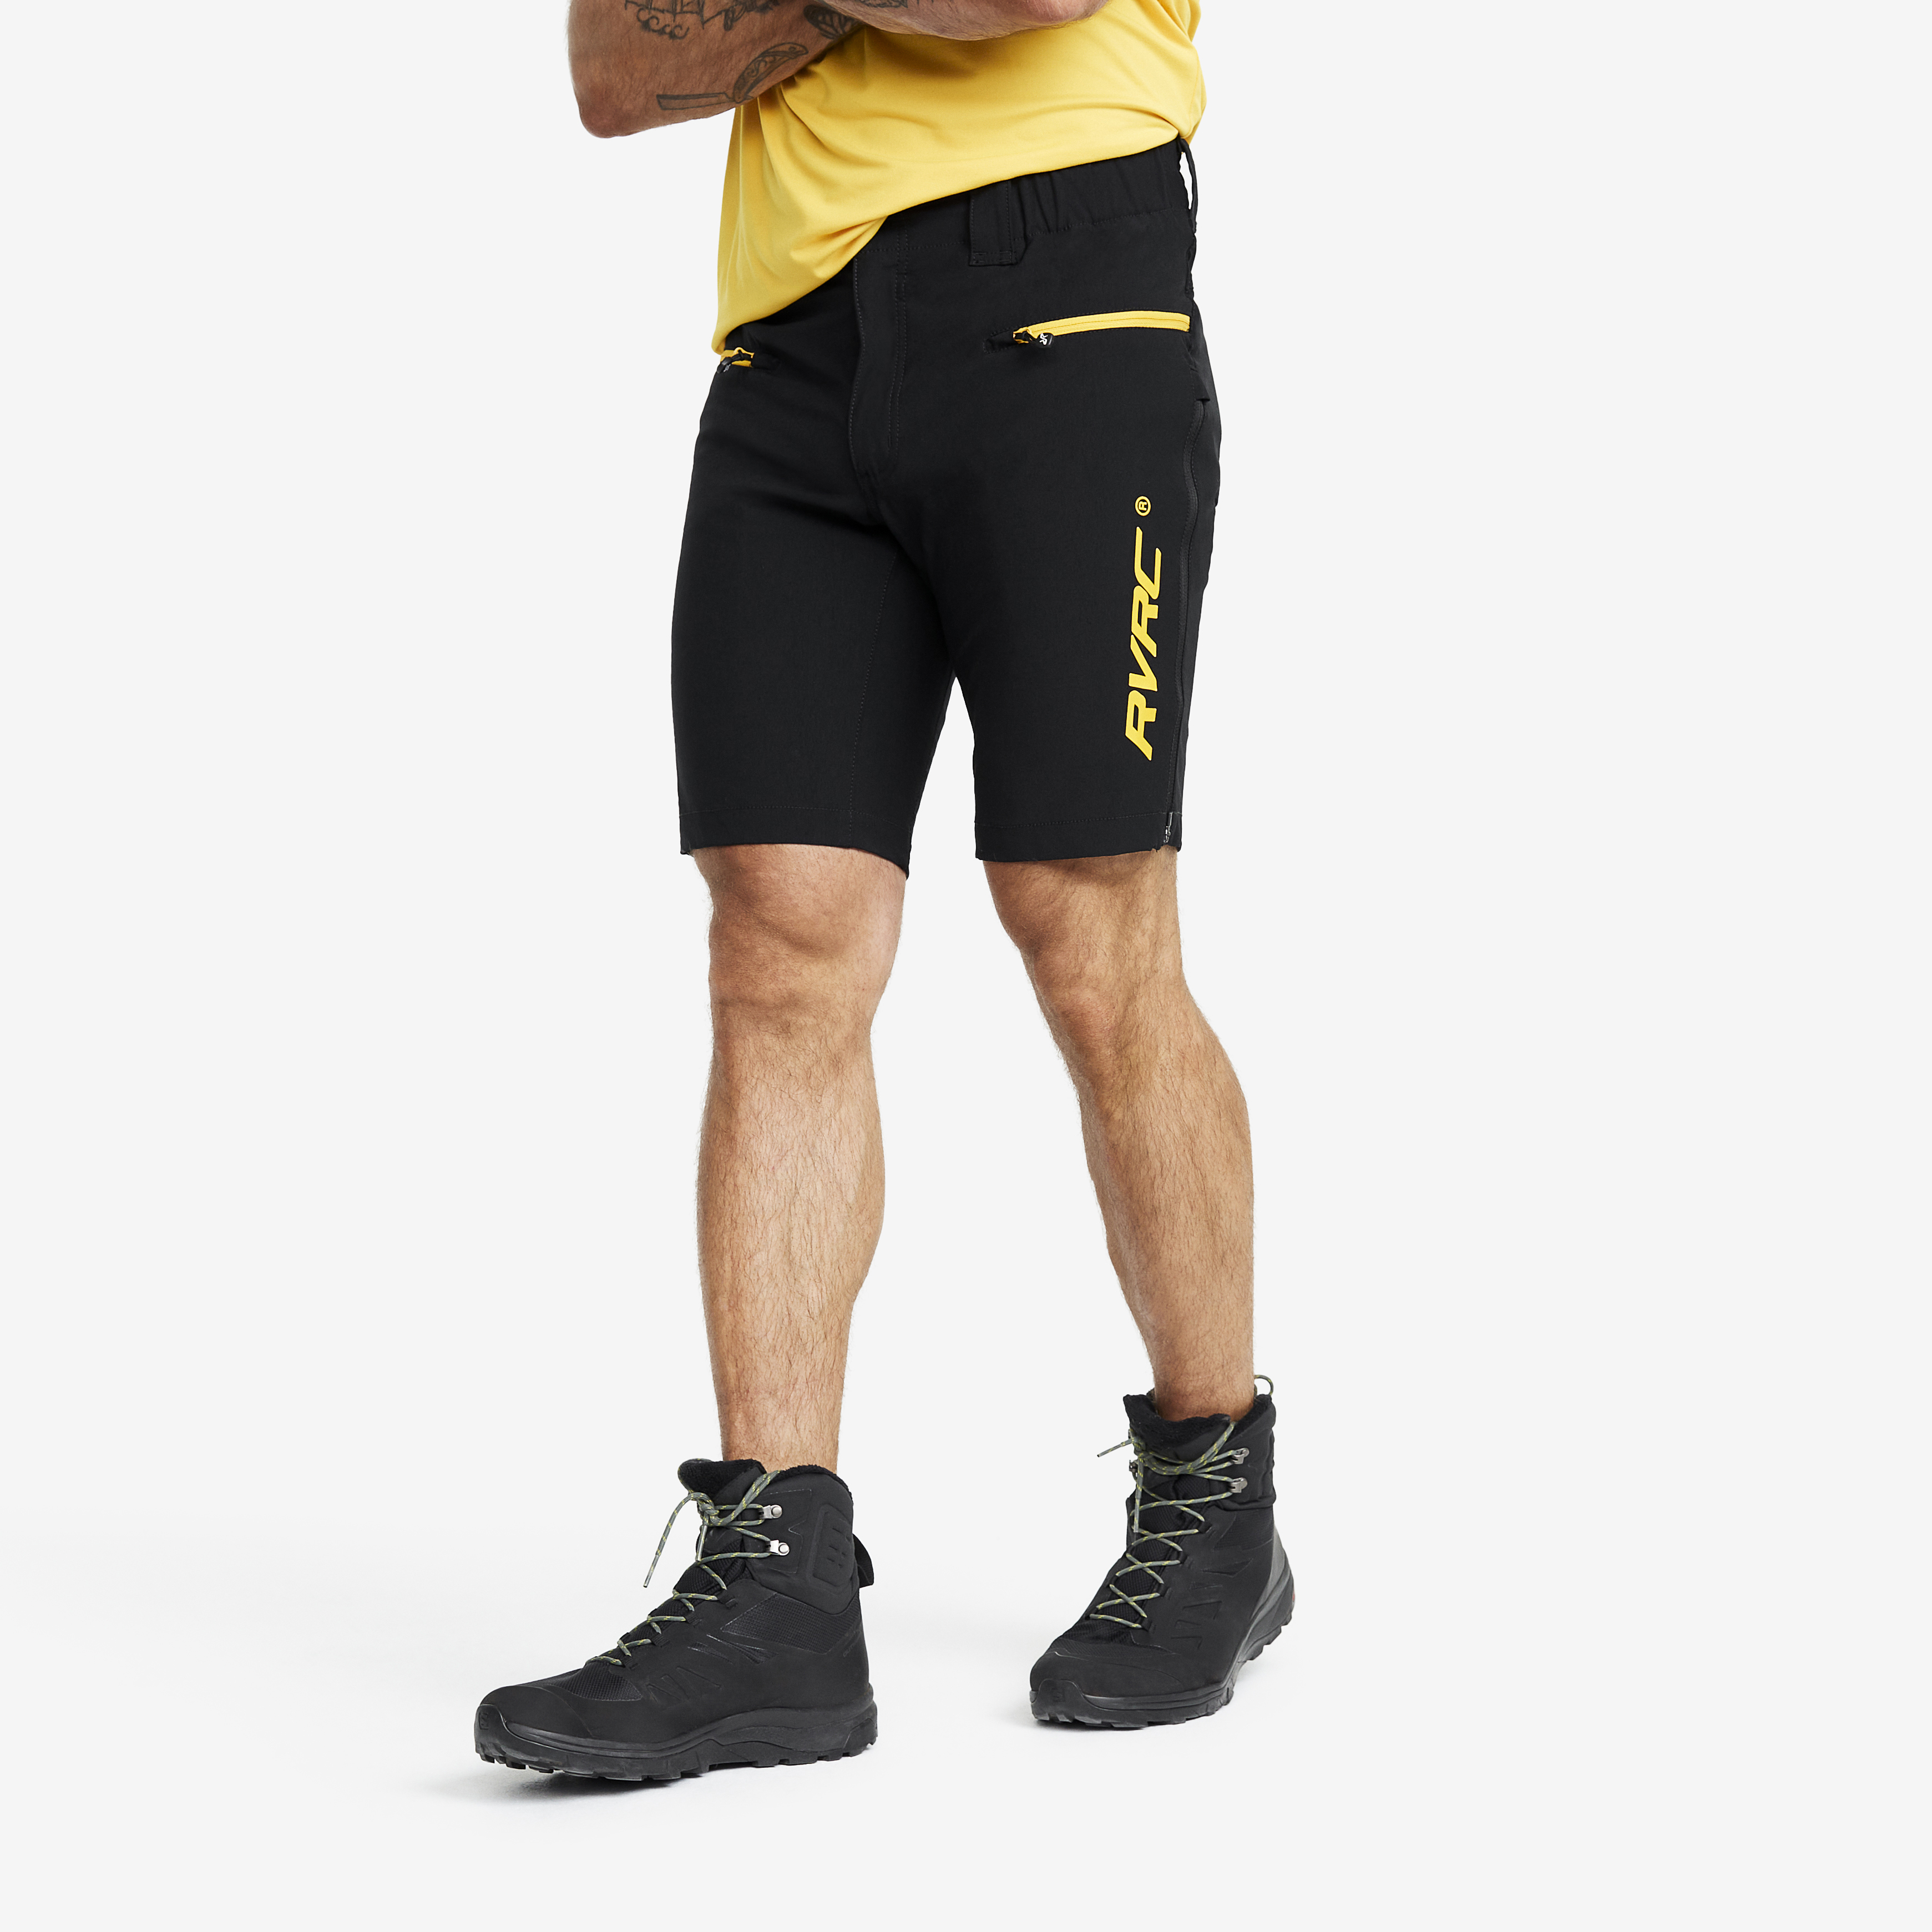 Trail Pro Shorts – Herr – Black/Yellow Storlek:S – Byxor > Shorts